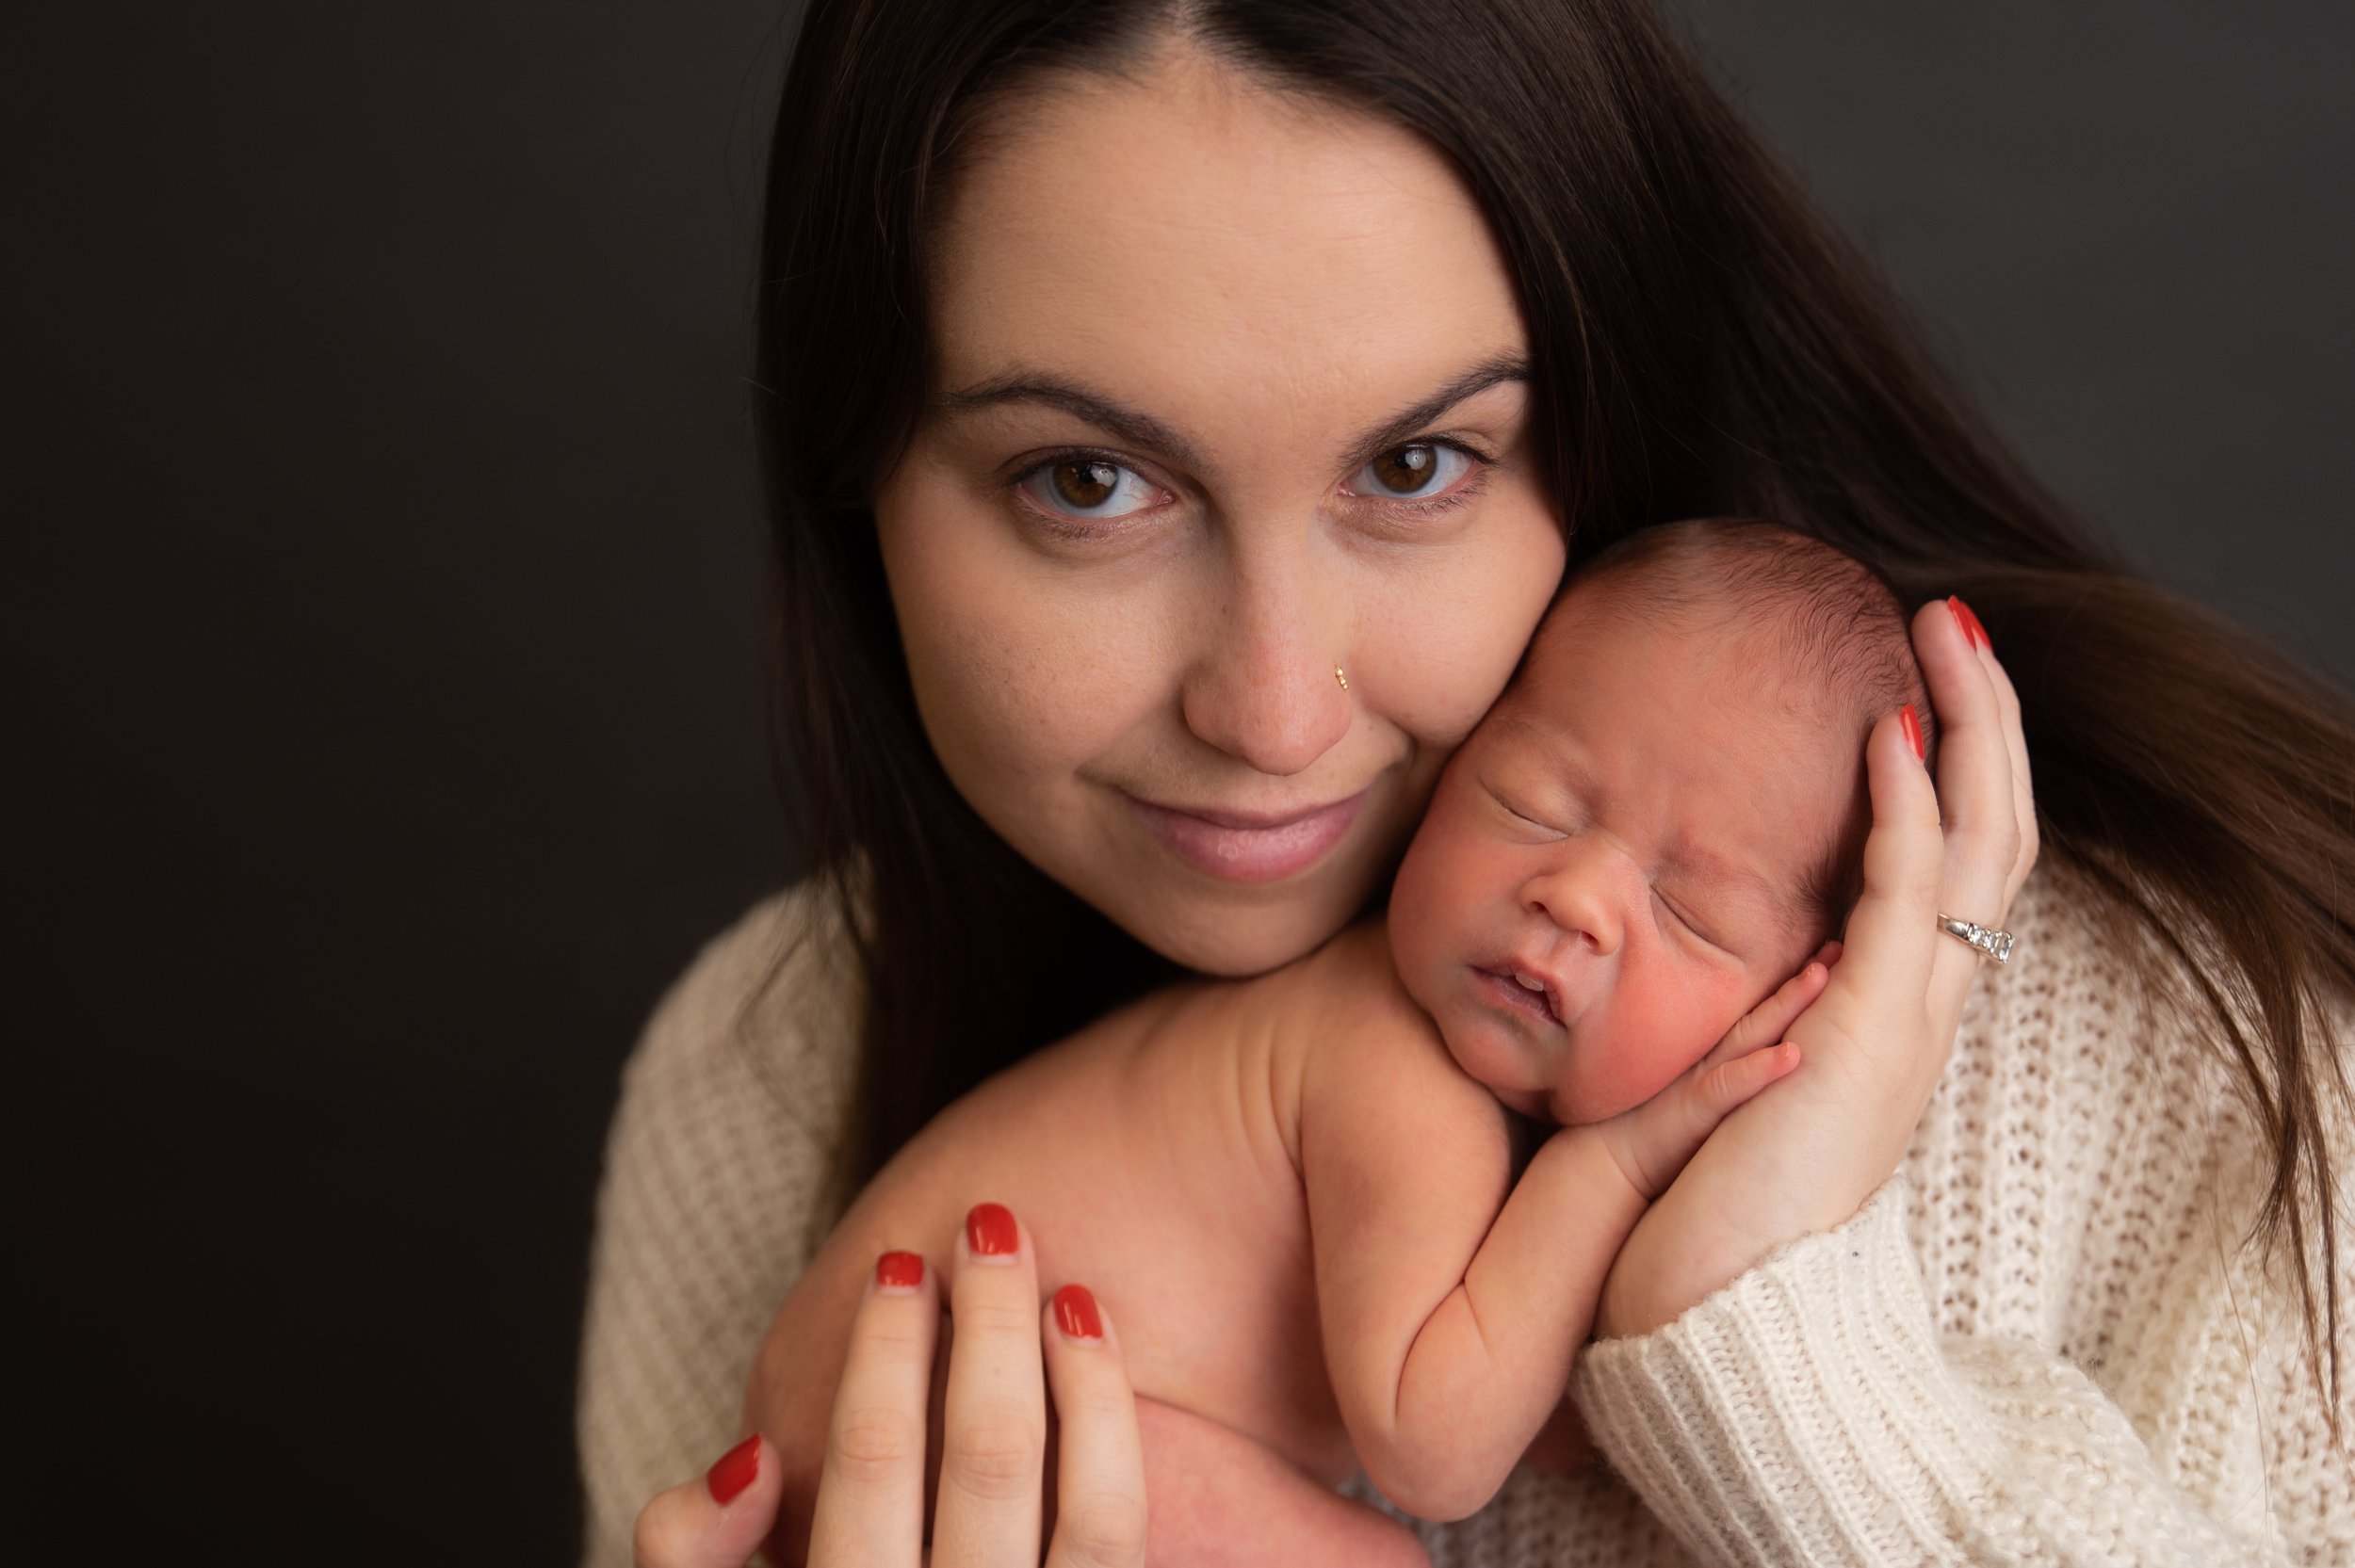 newborn and baby photographer